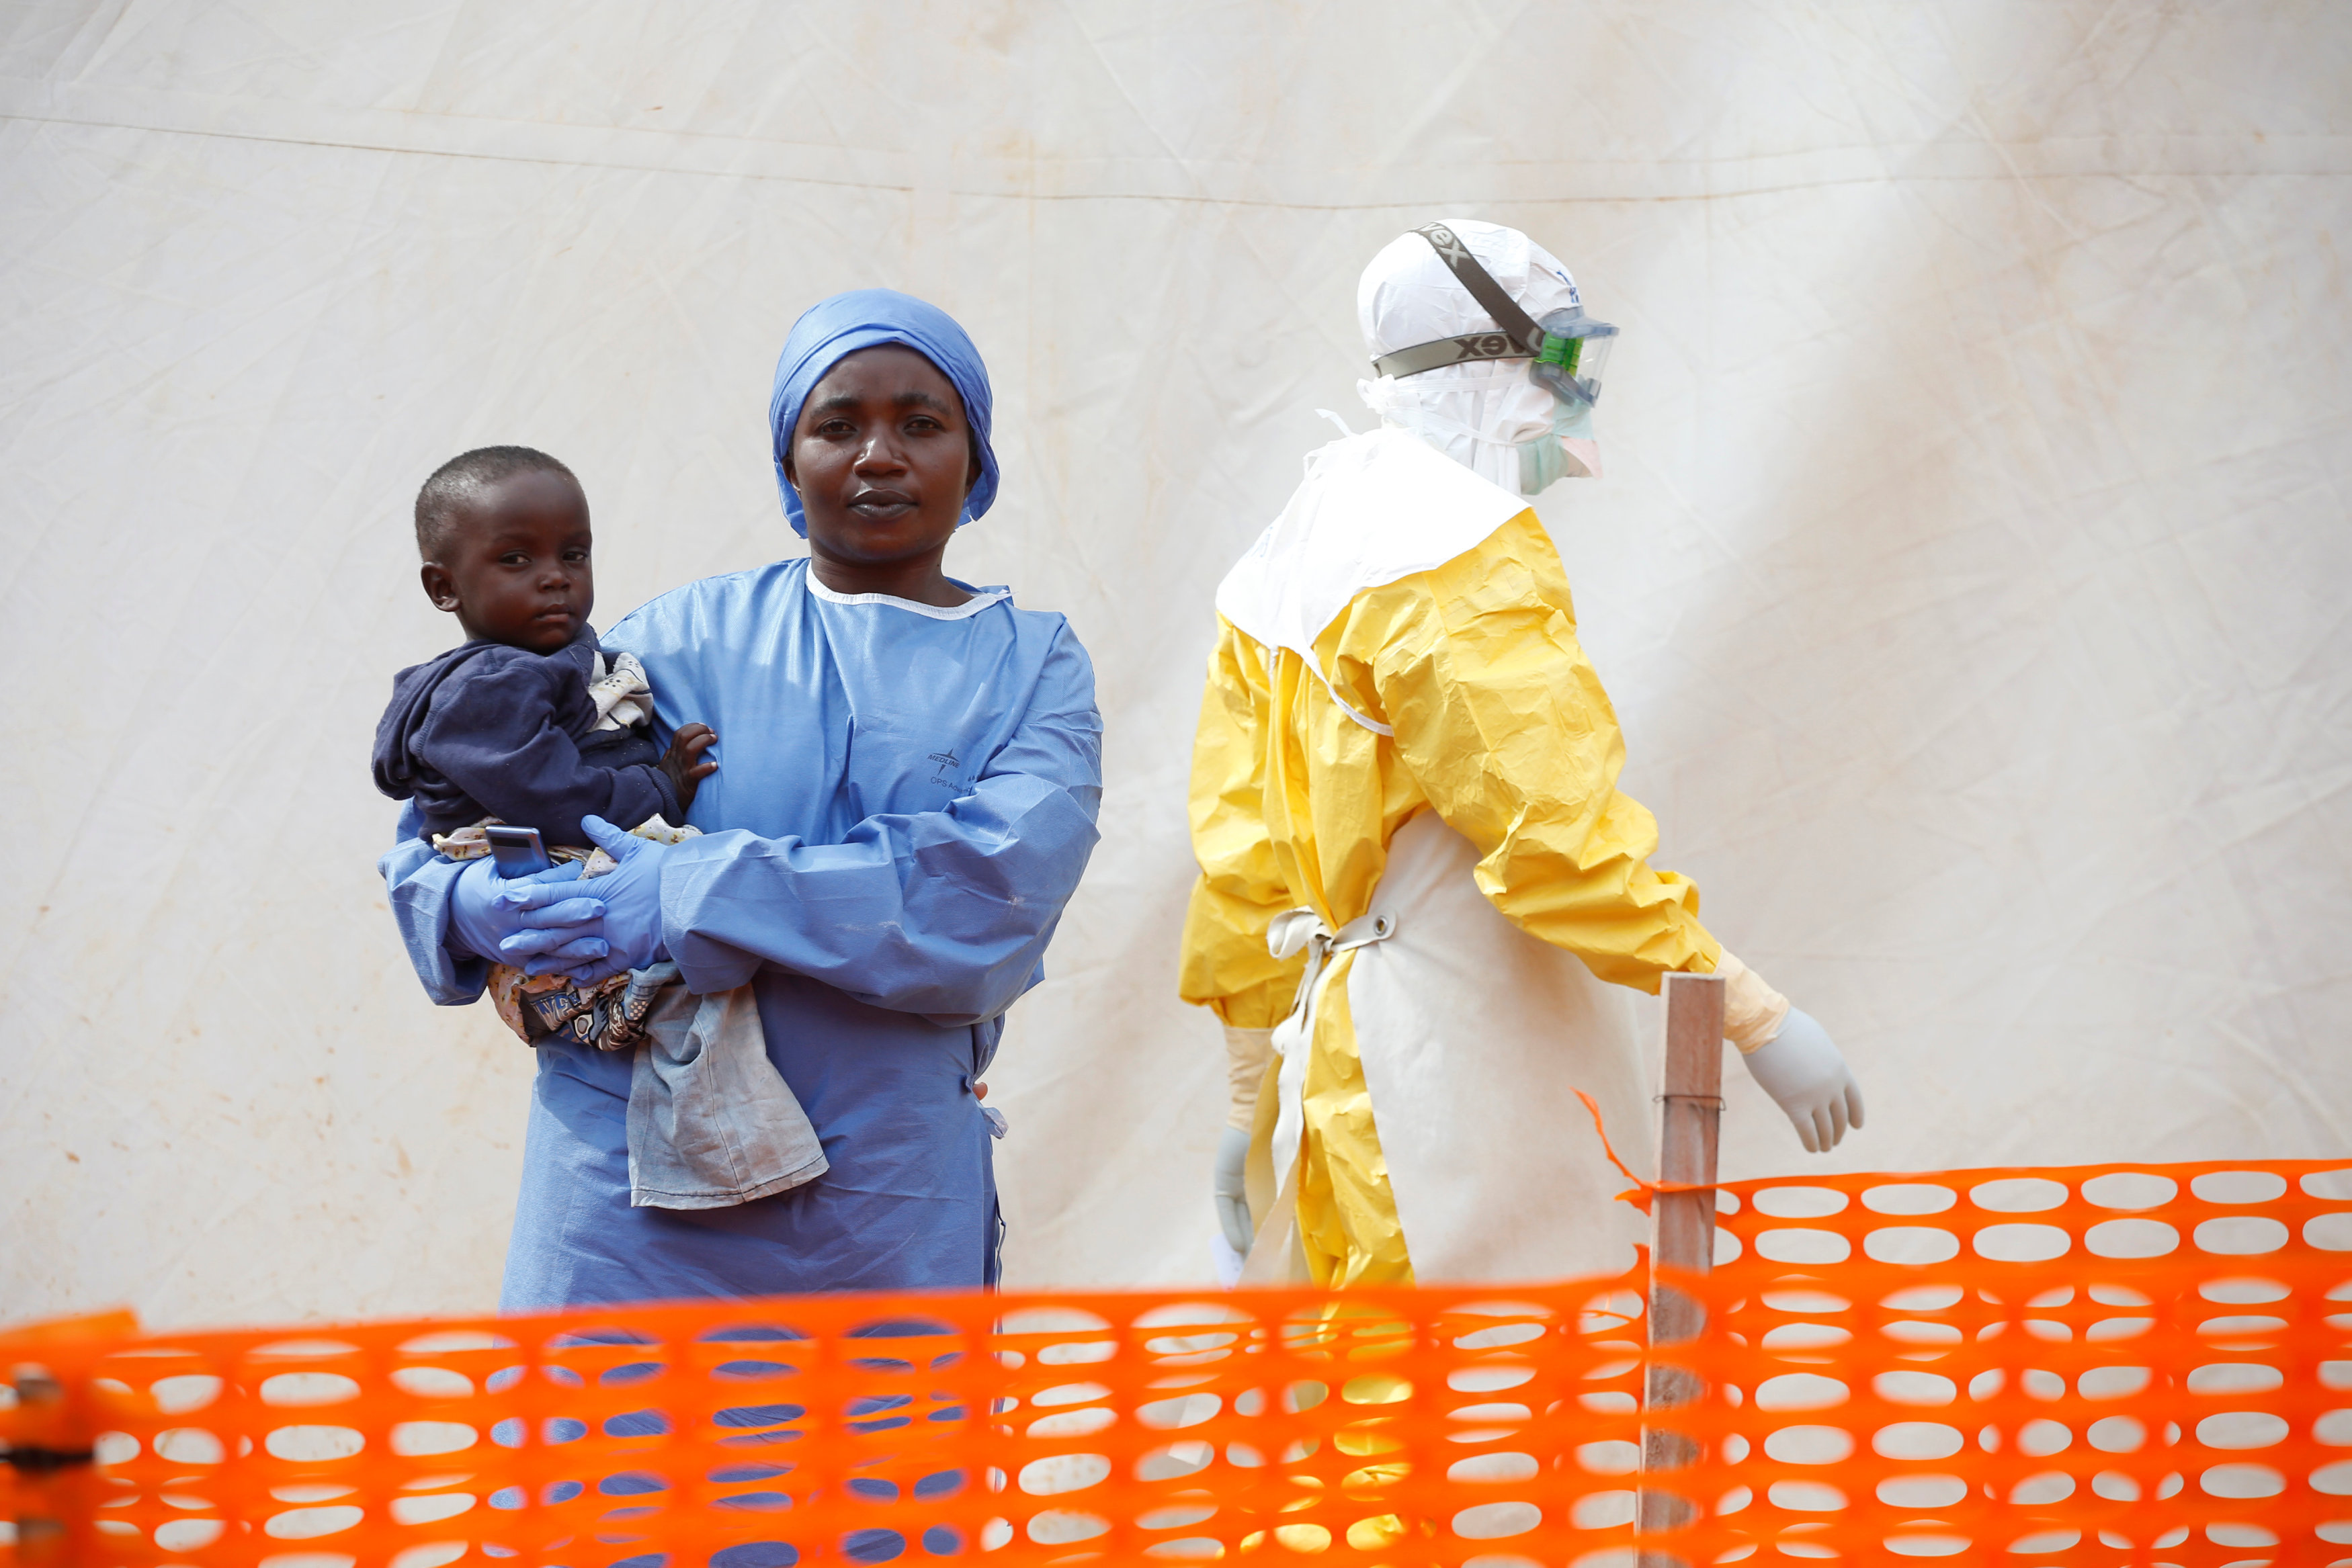 Una de les zones afectades per l’Ebola al Congo.